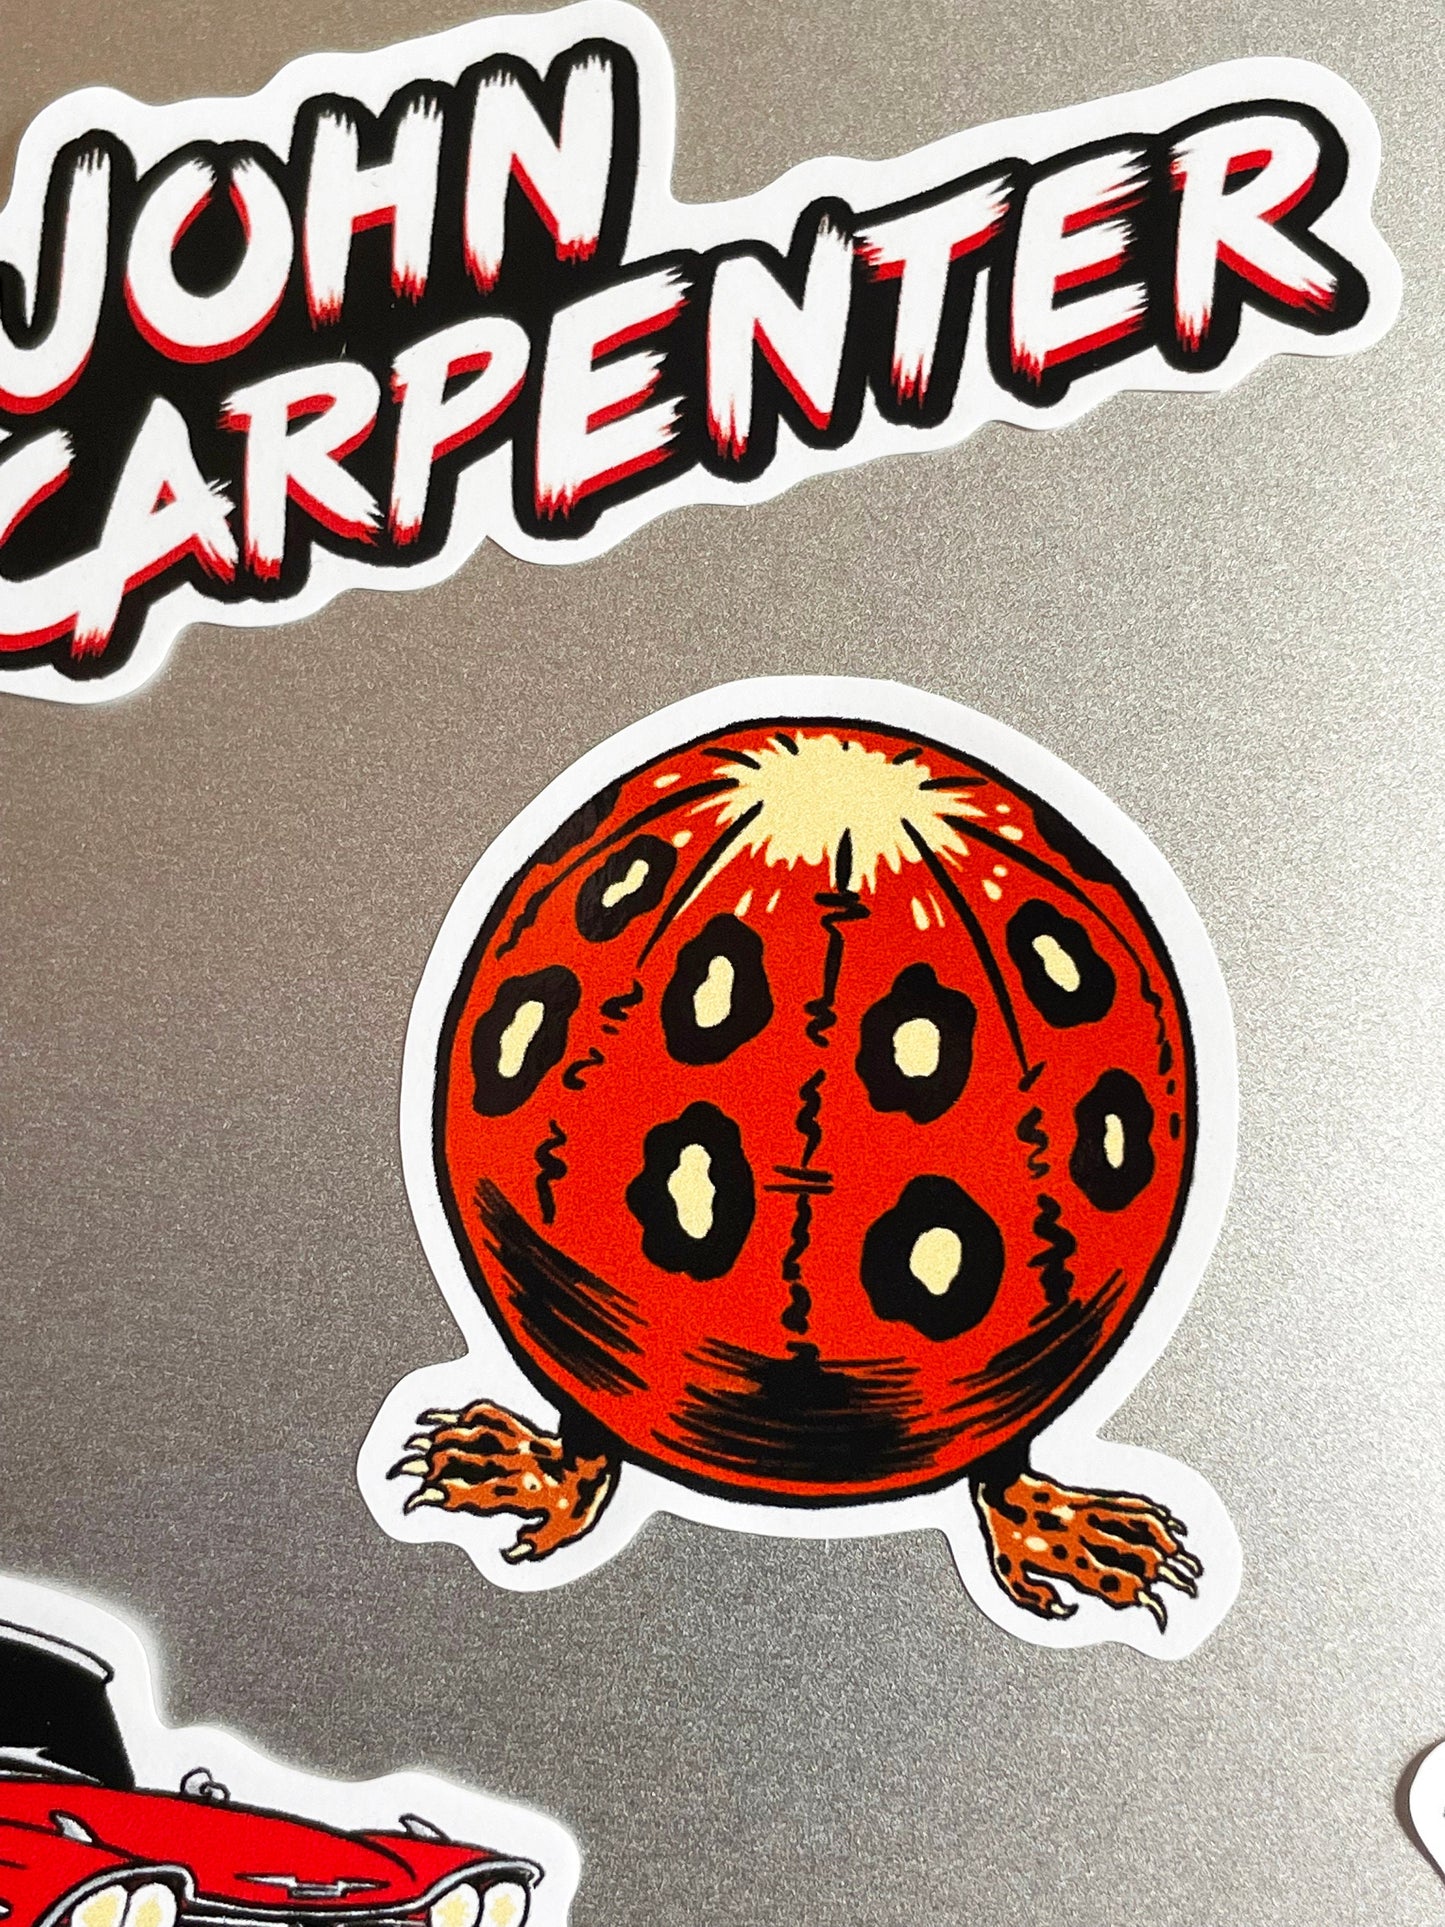 JOHN CARPENTER Sticker Sheet